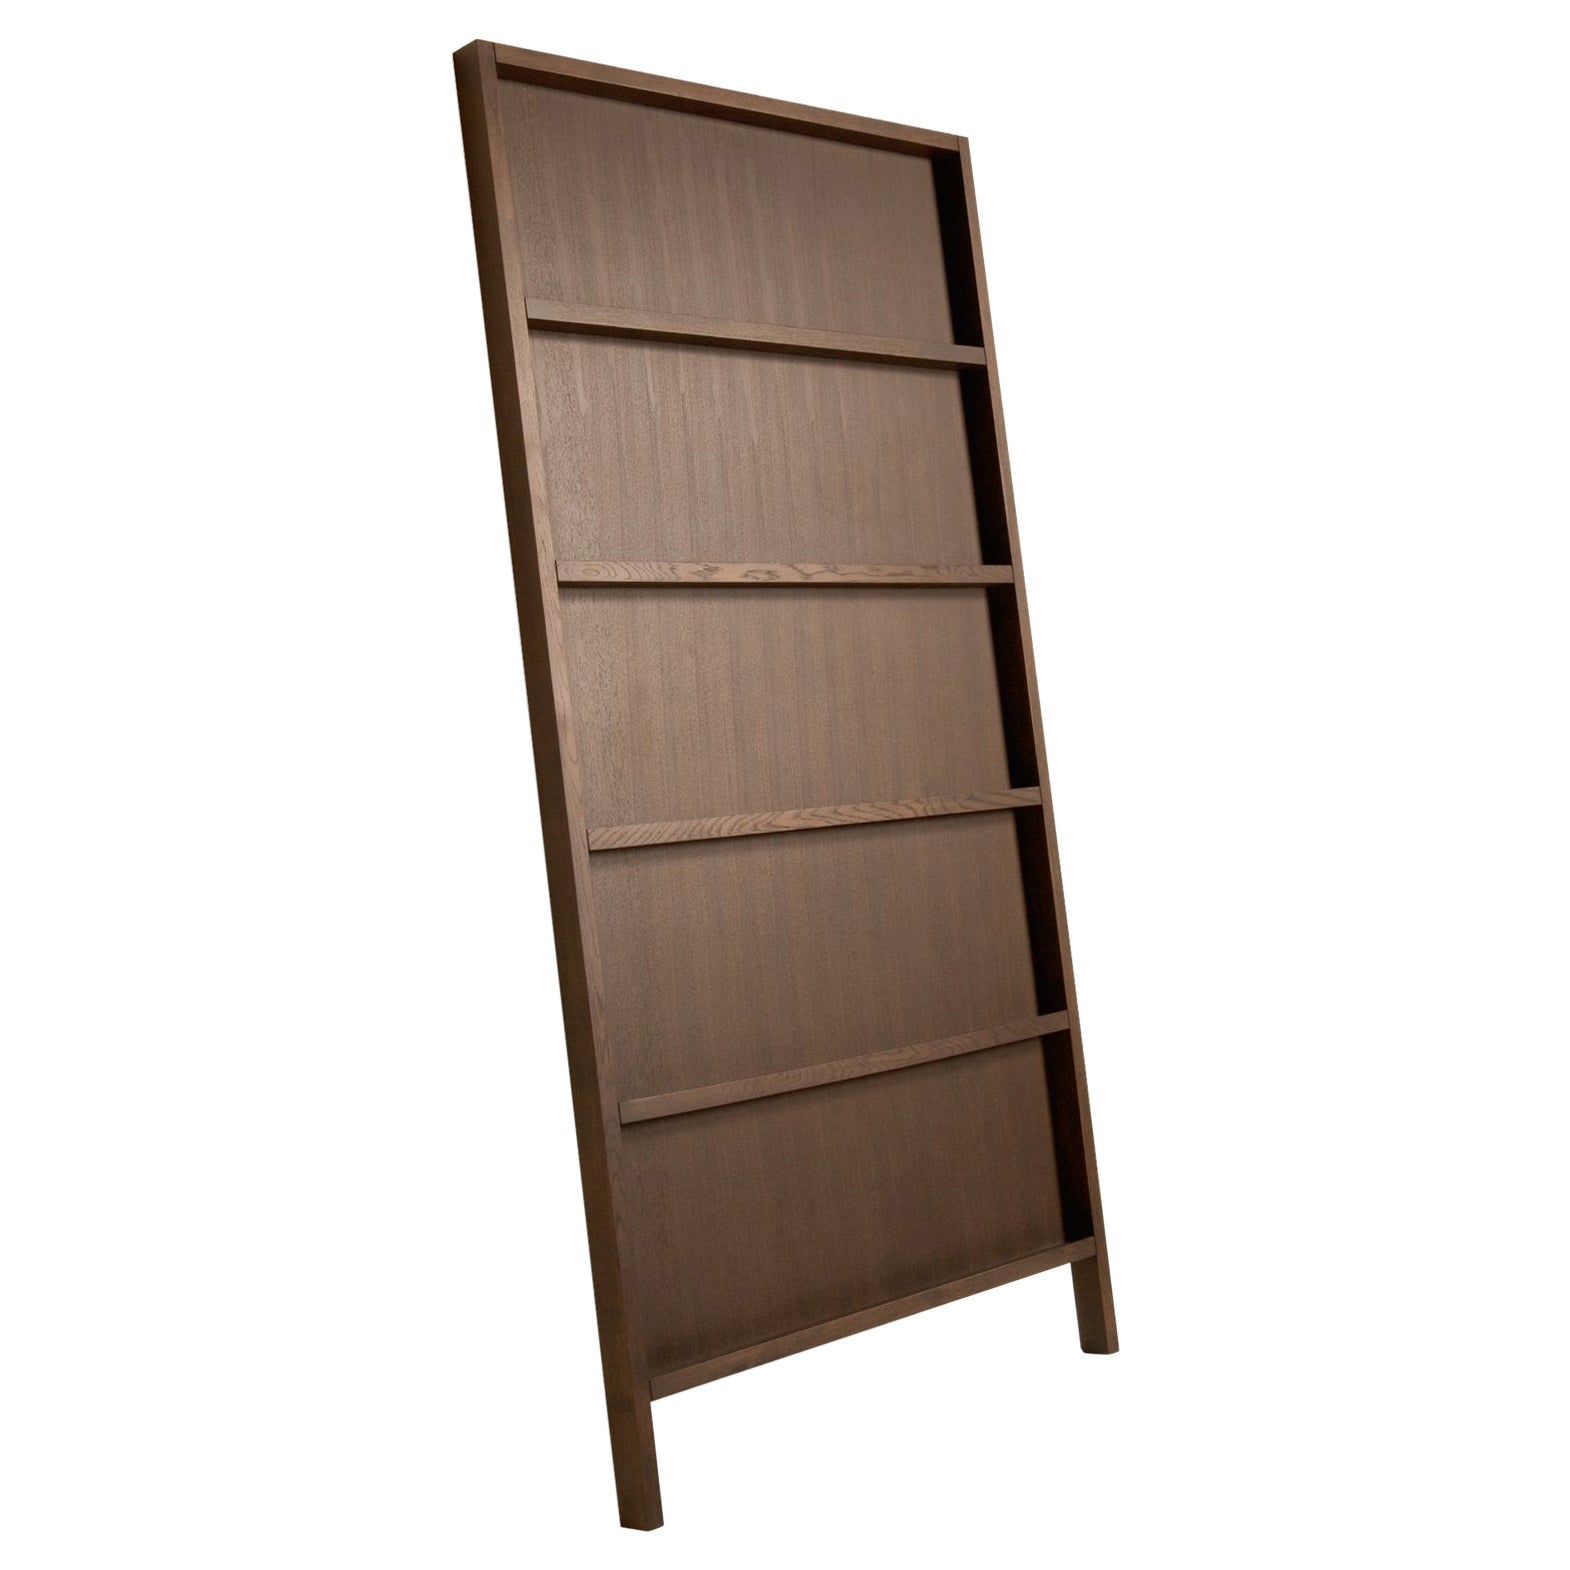 Moooi Oblique Small Cupboard/Wall Shelf in Cinnamon Stained Oak